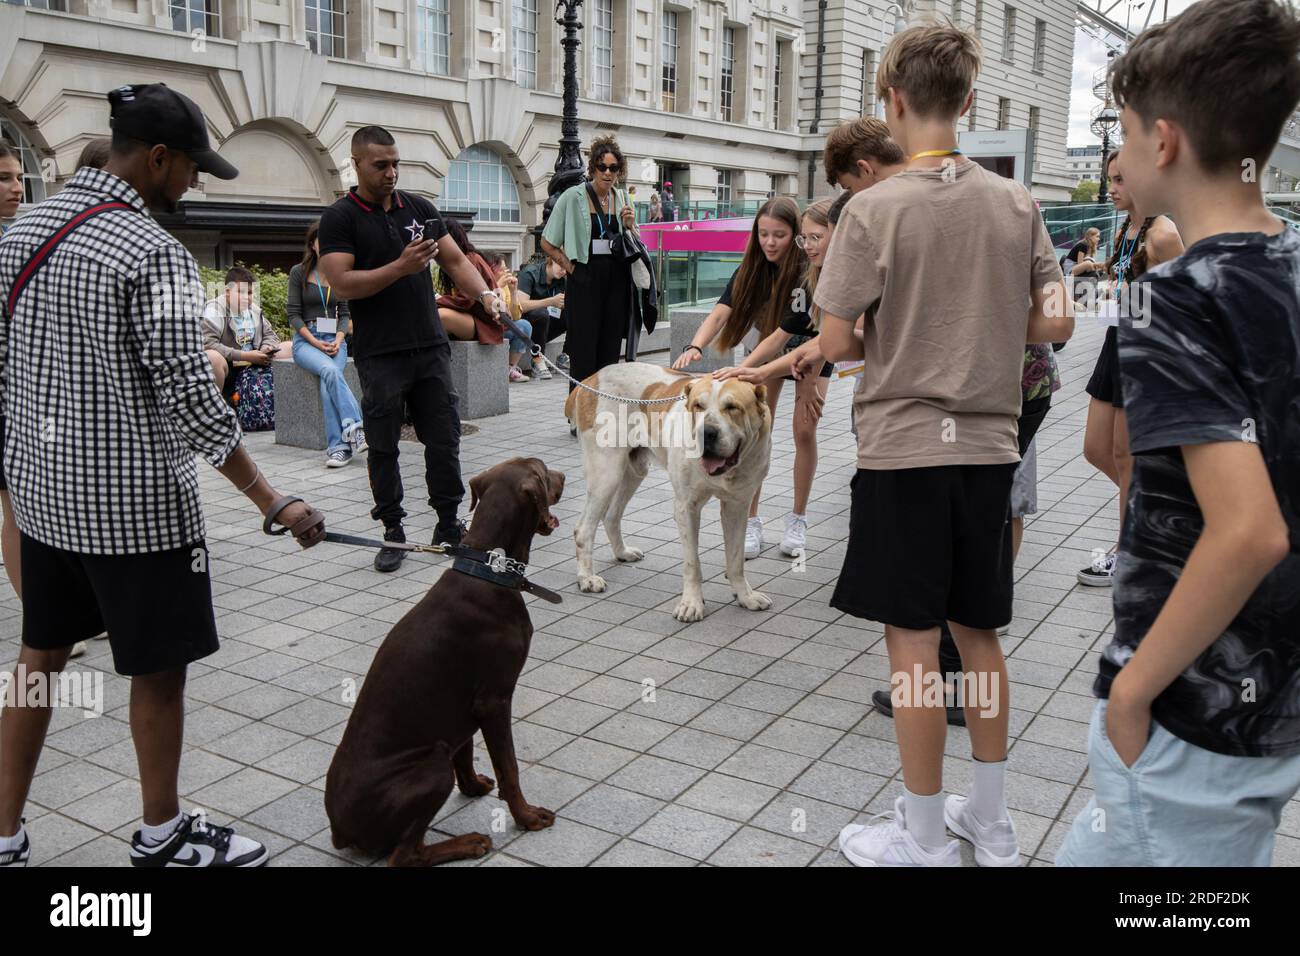 Les jeunes touristes se rassemblent autour de deux grands chiens alors qu'ils s'arrêtent pour les caresser sur le Southbank, Londres, Angleterre, Royaume-Uni Banque D'Images